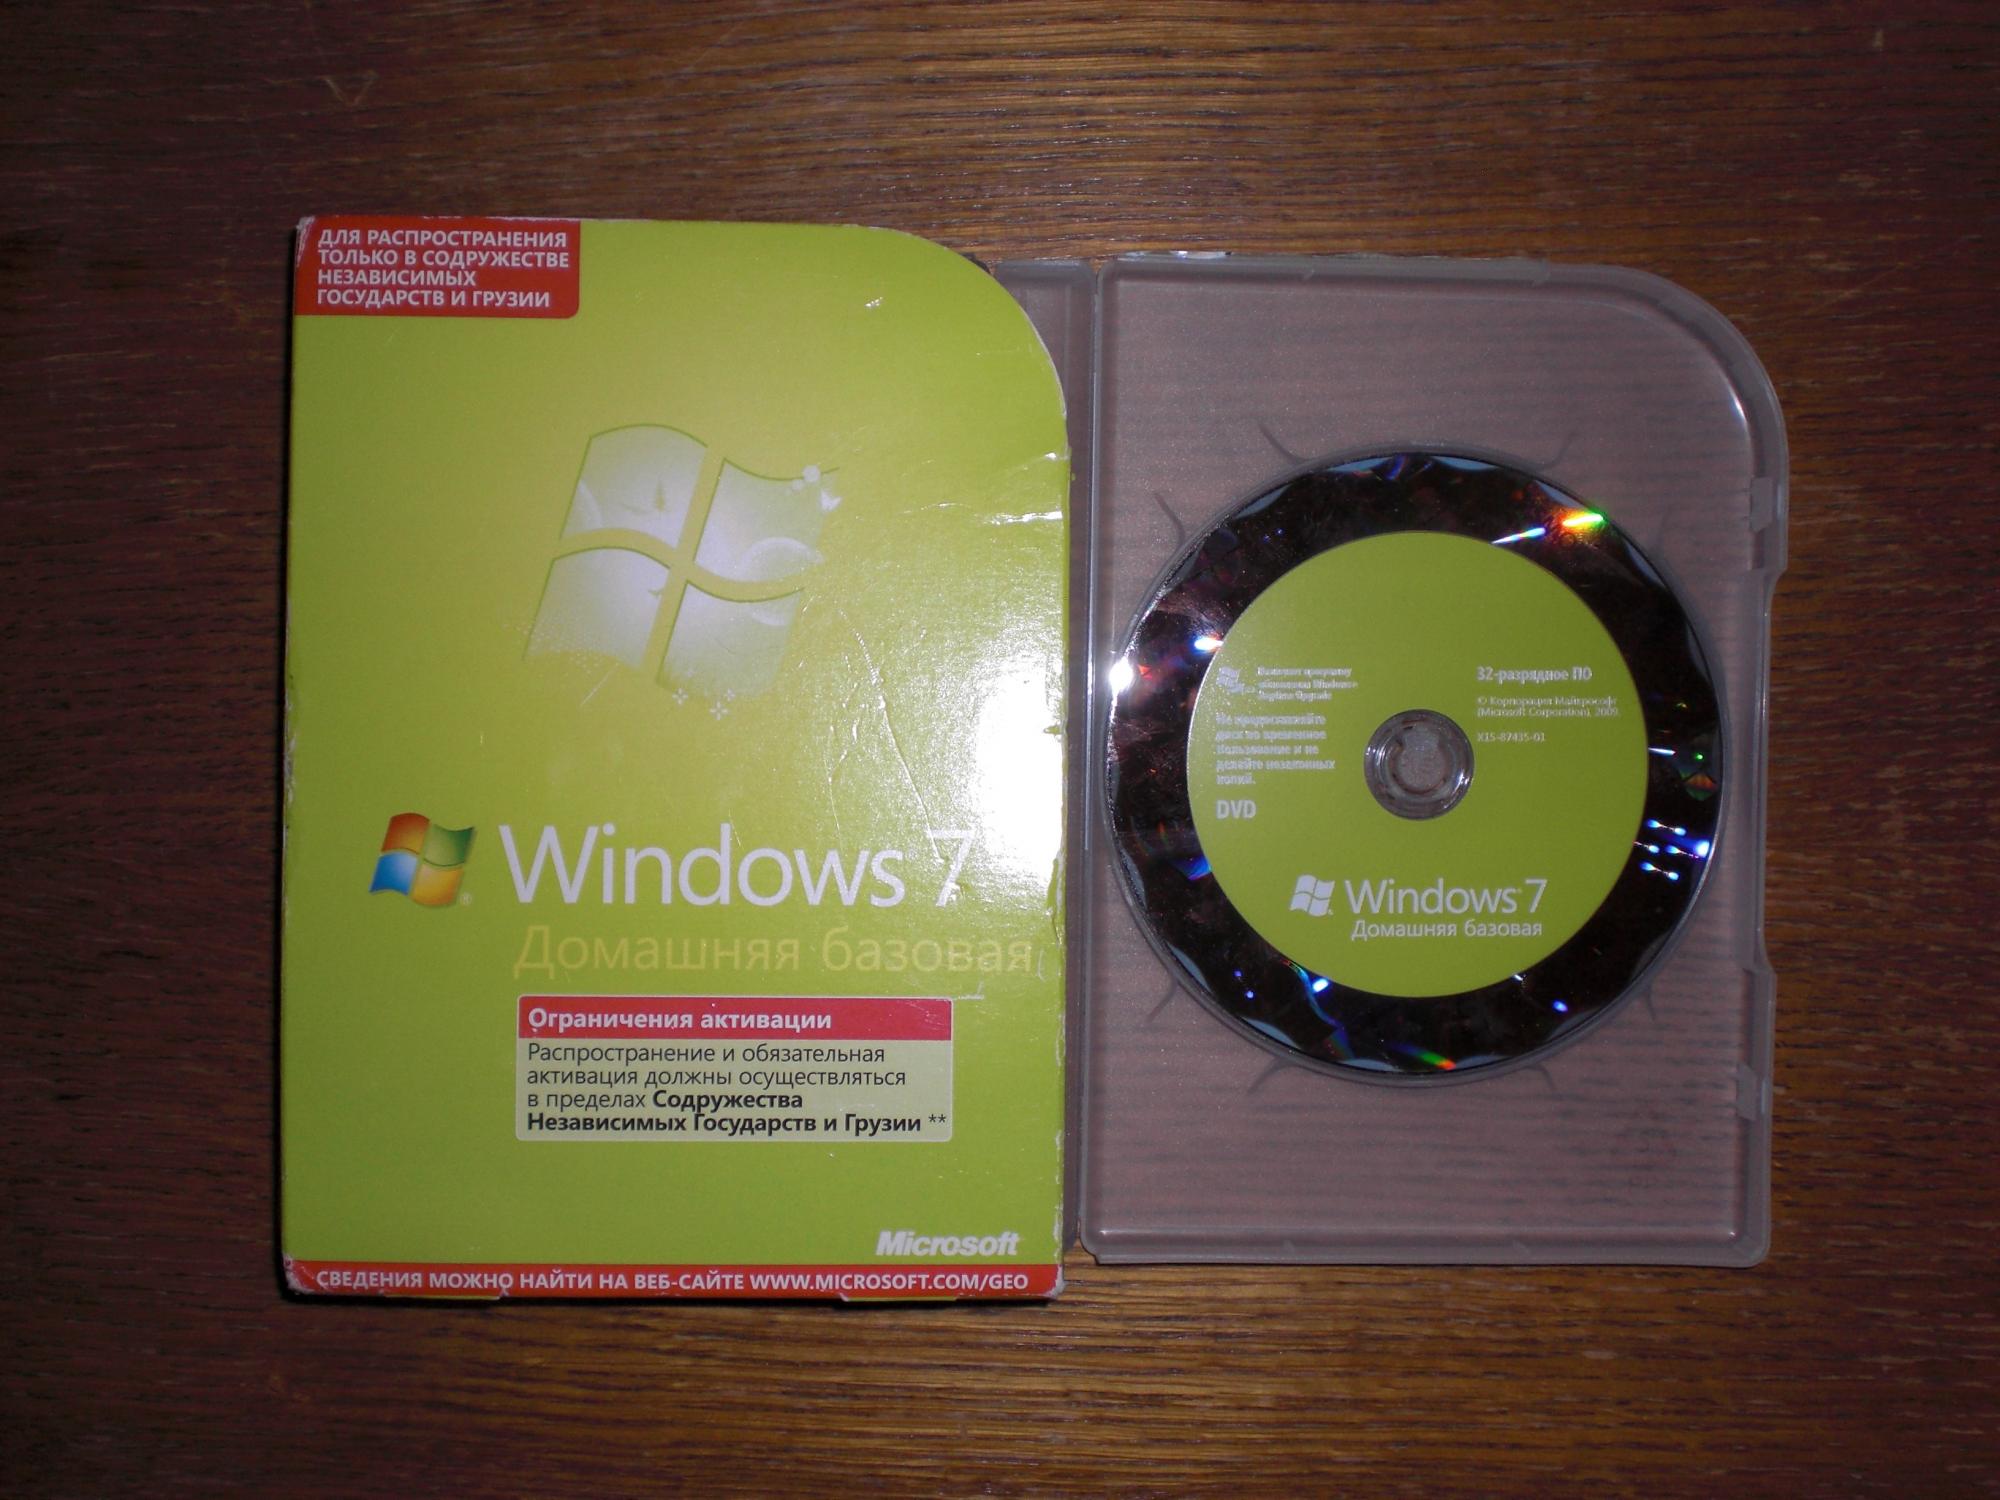 Активатор 7 домашняя базовая. Windows 7 домашняя Базовая диск. Обои 7 домашняя Базовая.